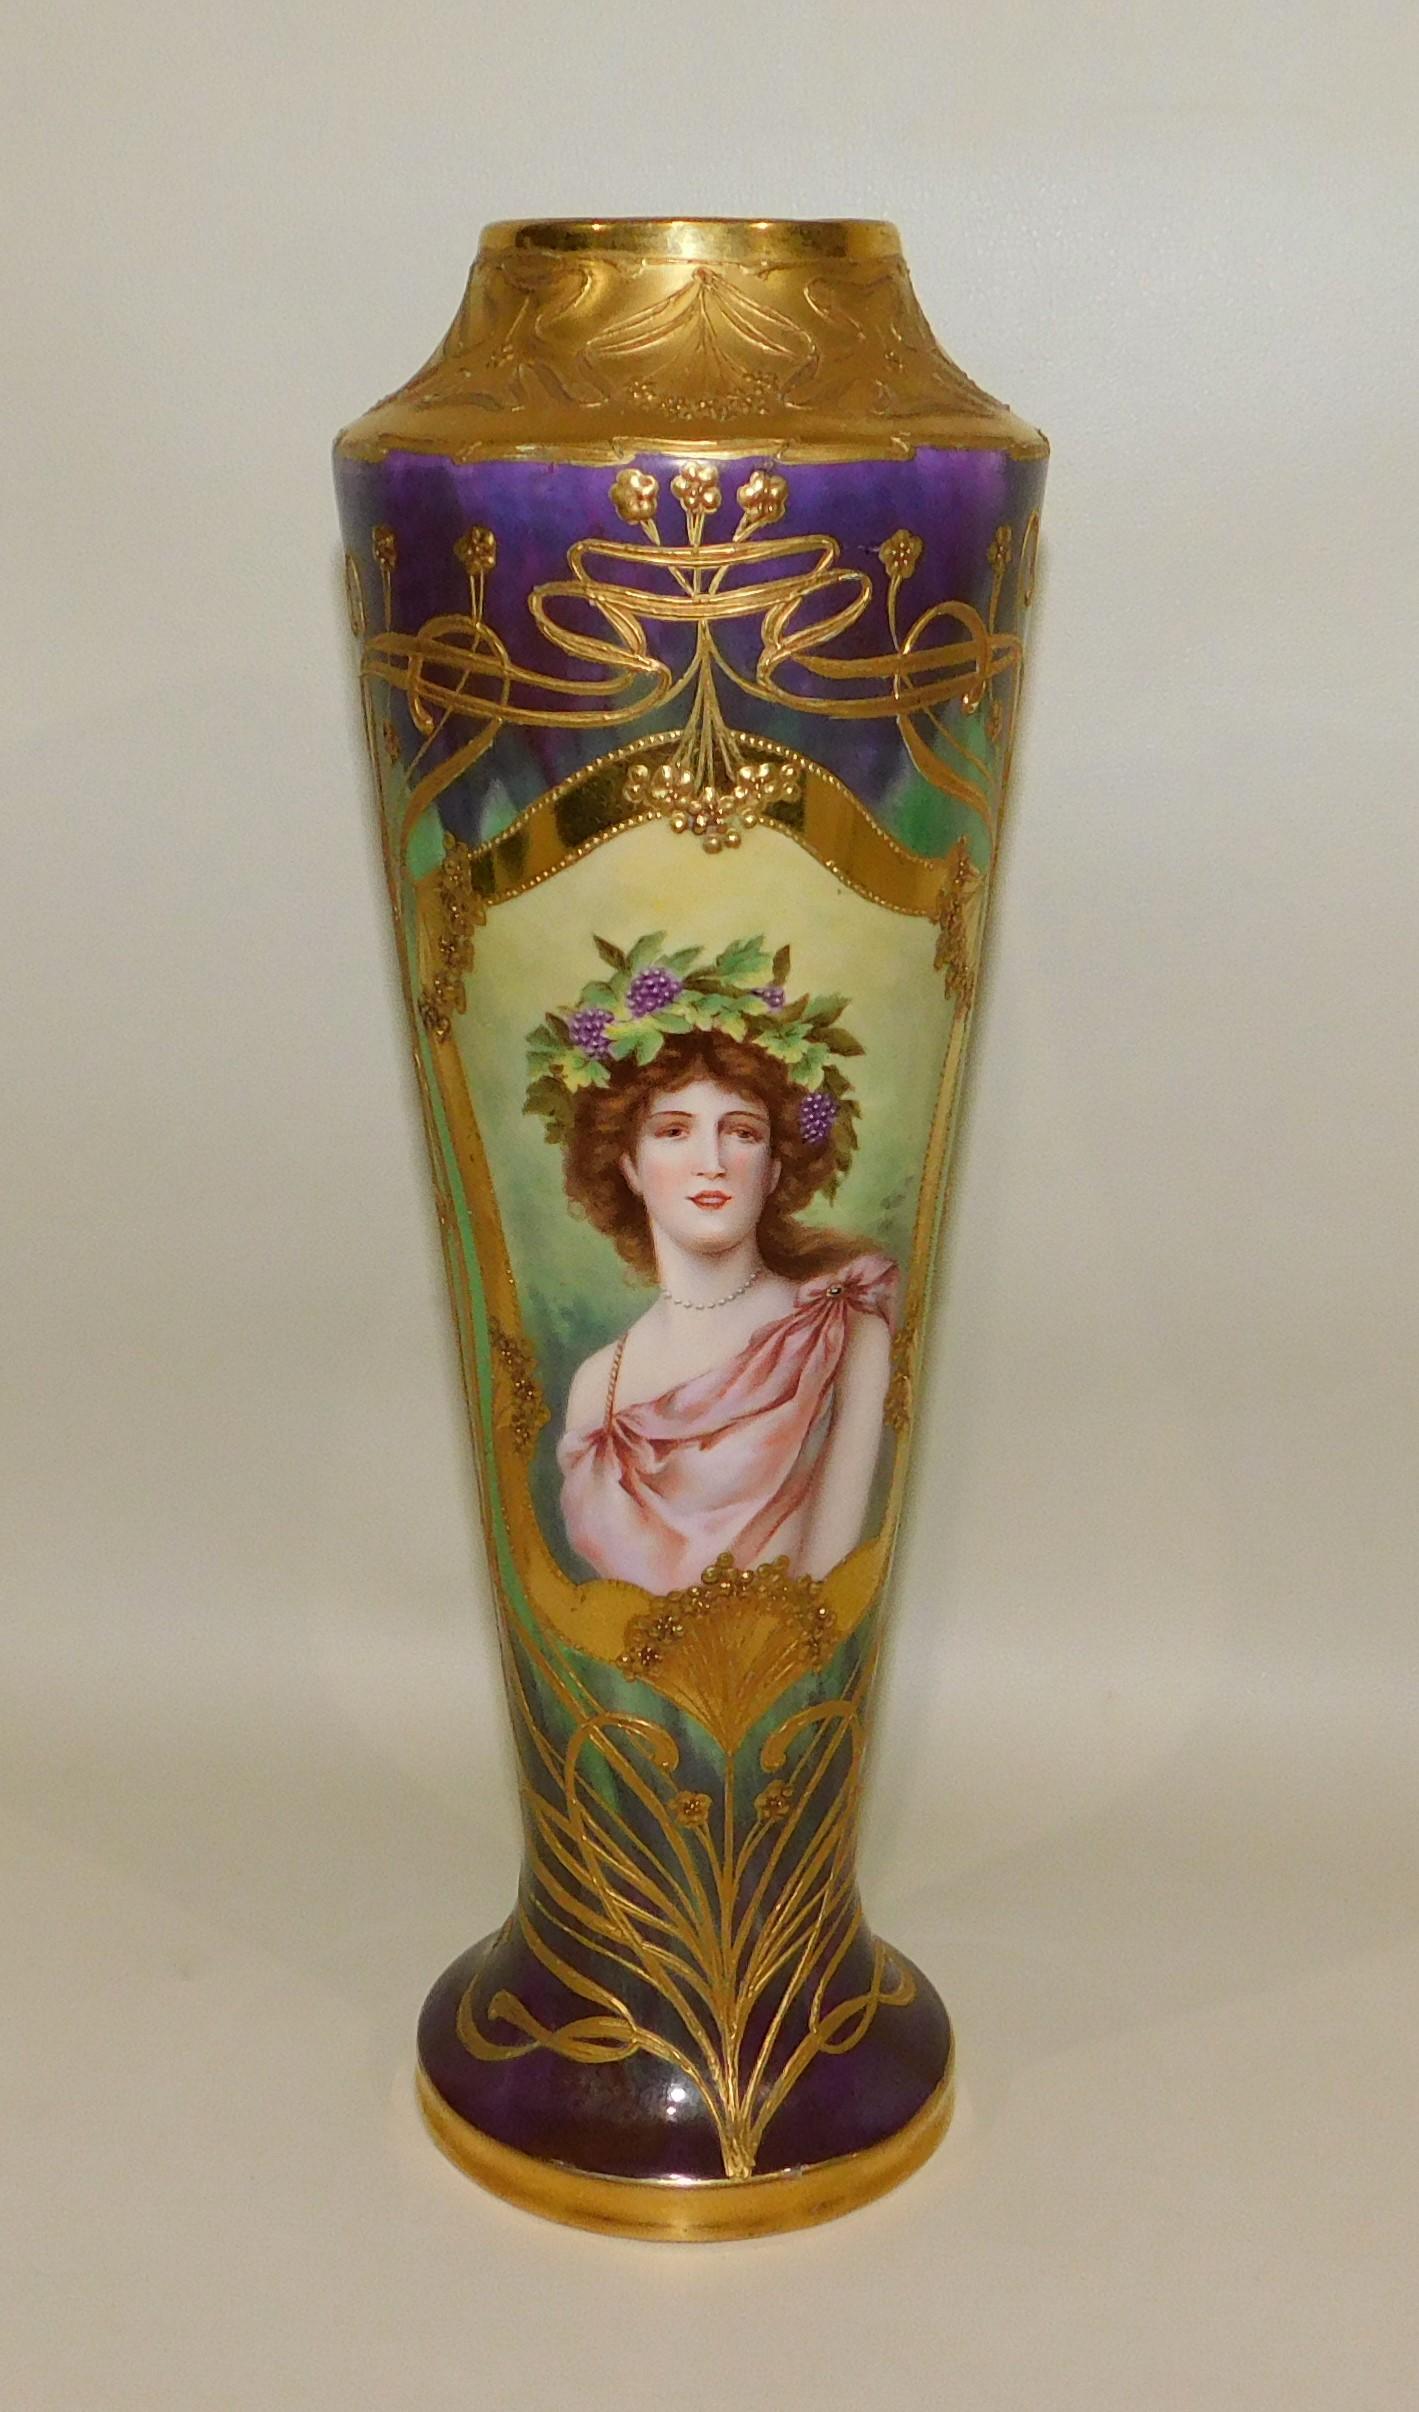 Vase de forage en porcelaine peinte à la main par le roi de Vienne au XIXe siècle. Le corps est recouvert de dorures de haute qualité et de décorations en relief de style Art nouveau. Le centre est orné d'un cartouche ovale représentant une belle